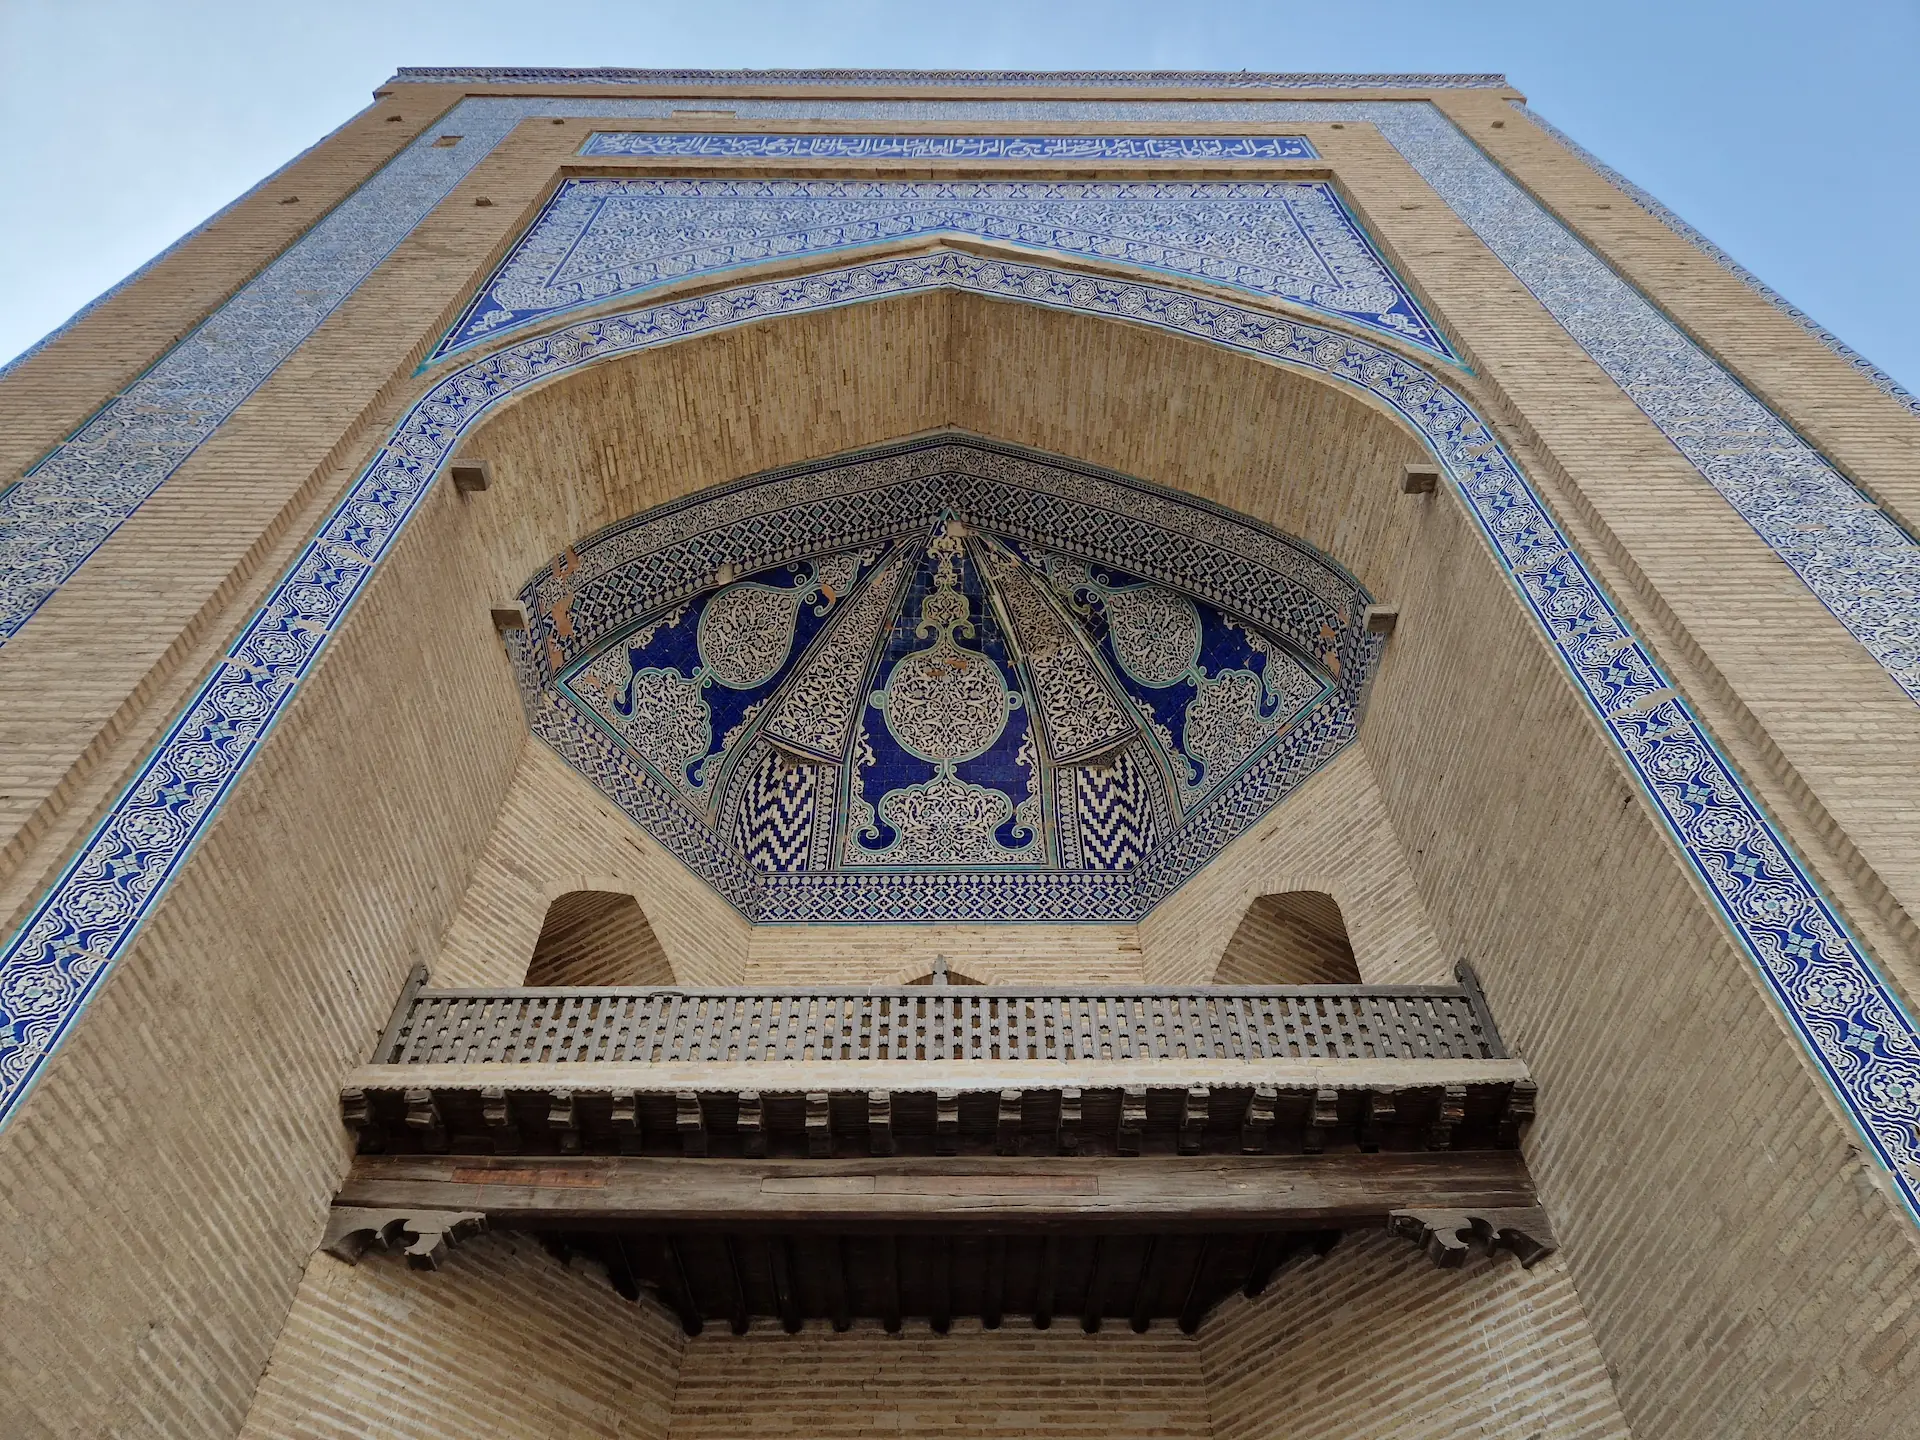 Entrée de la madrassa, vue d'en bas. Le bâtiment est en pierre et décoré de magnifiques morifs bleus et blancs.